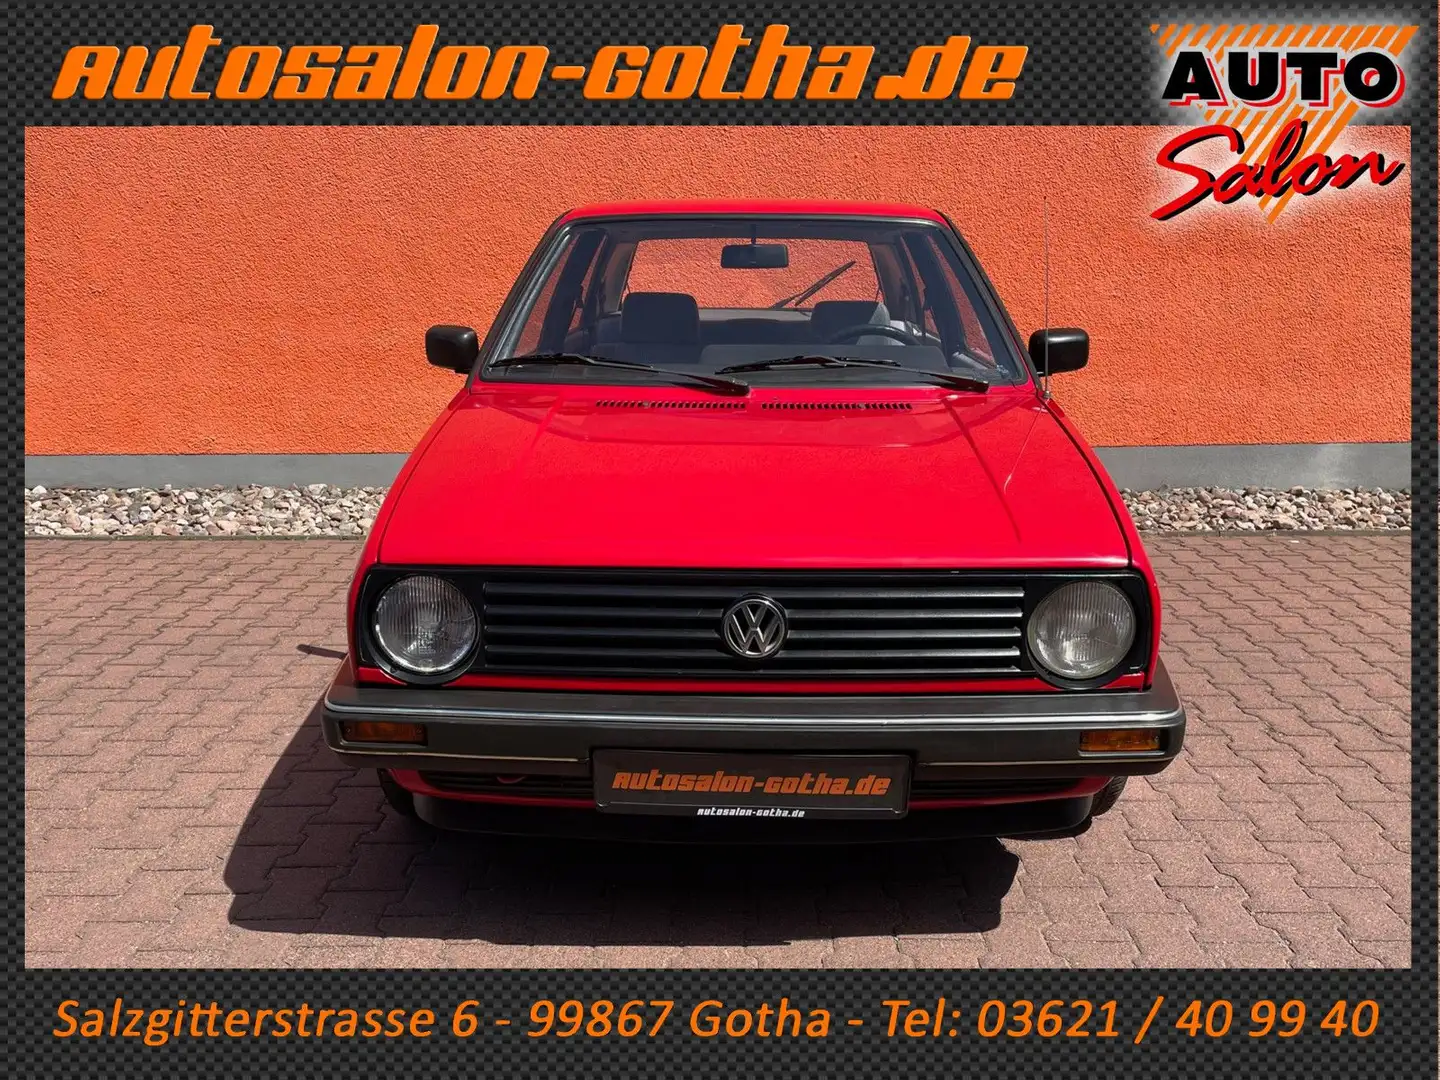 Volkswagen Golf II 1.6 GL Tornadorot - Original - Oldtimer Rouge - 2